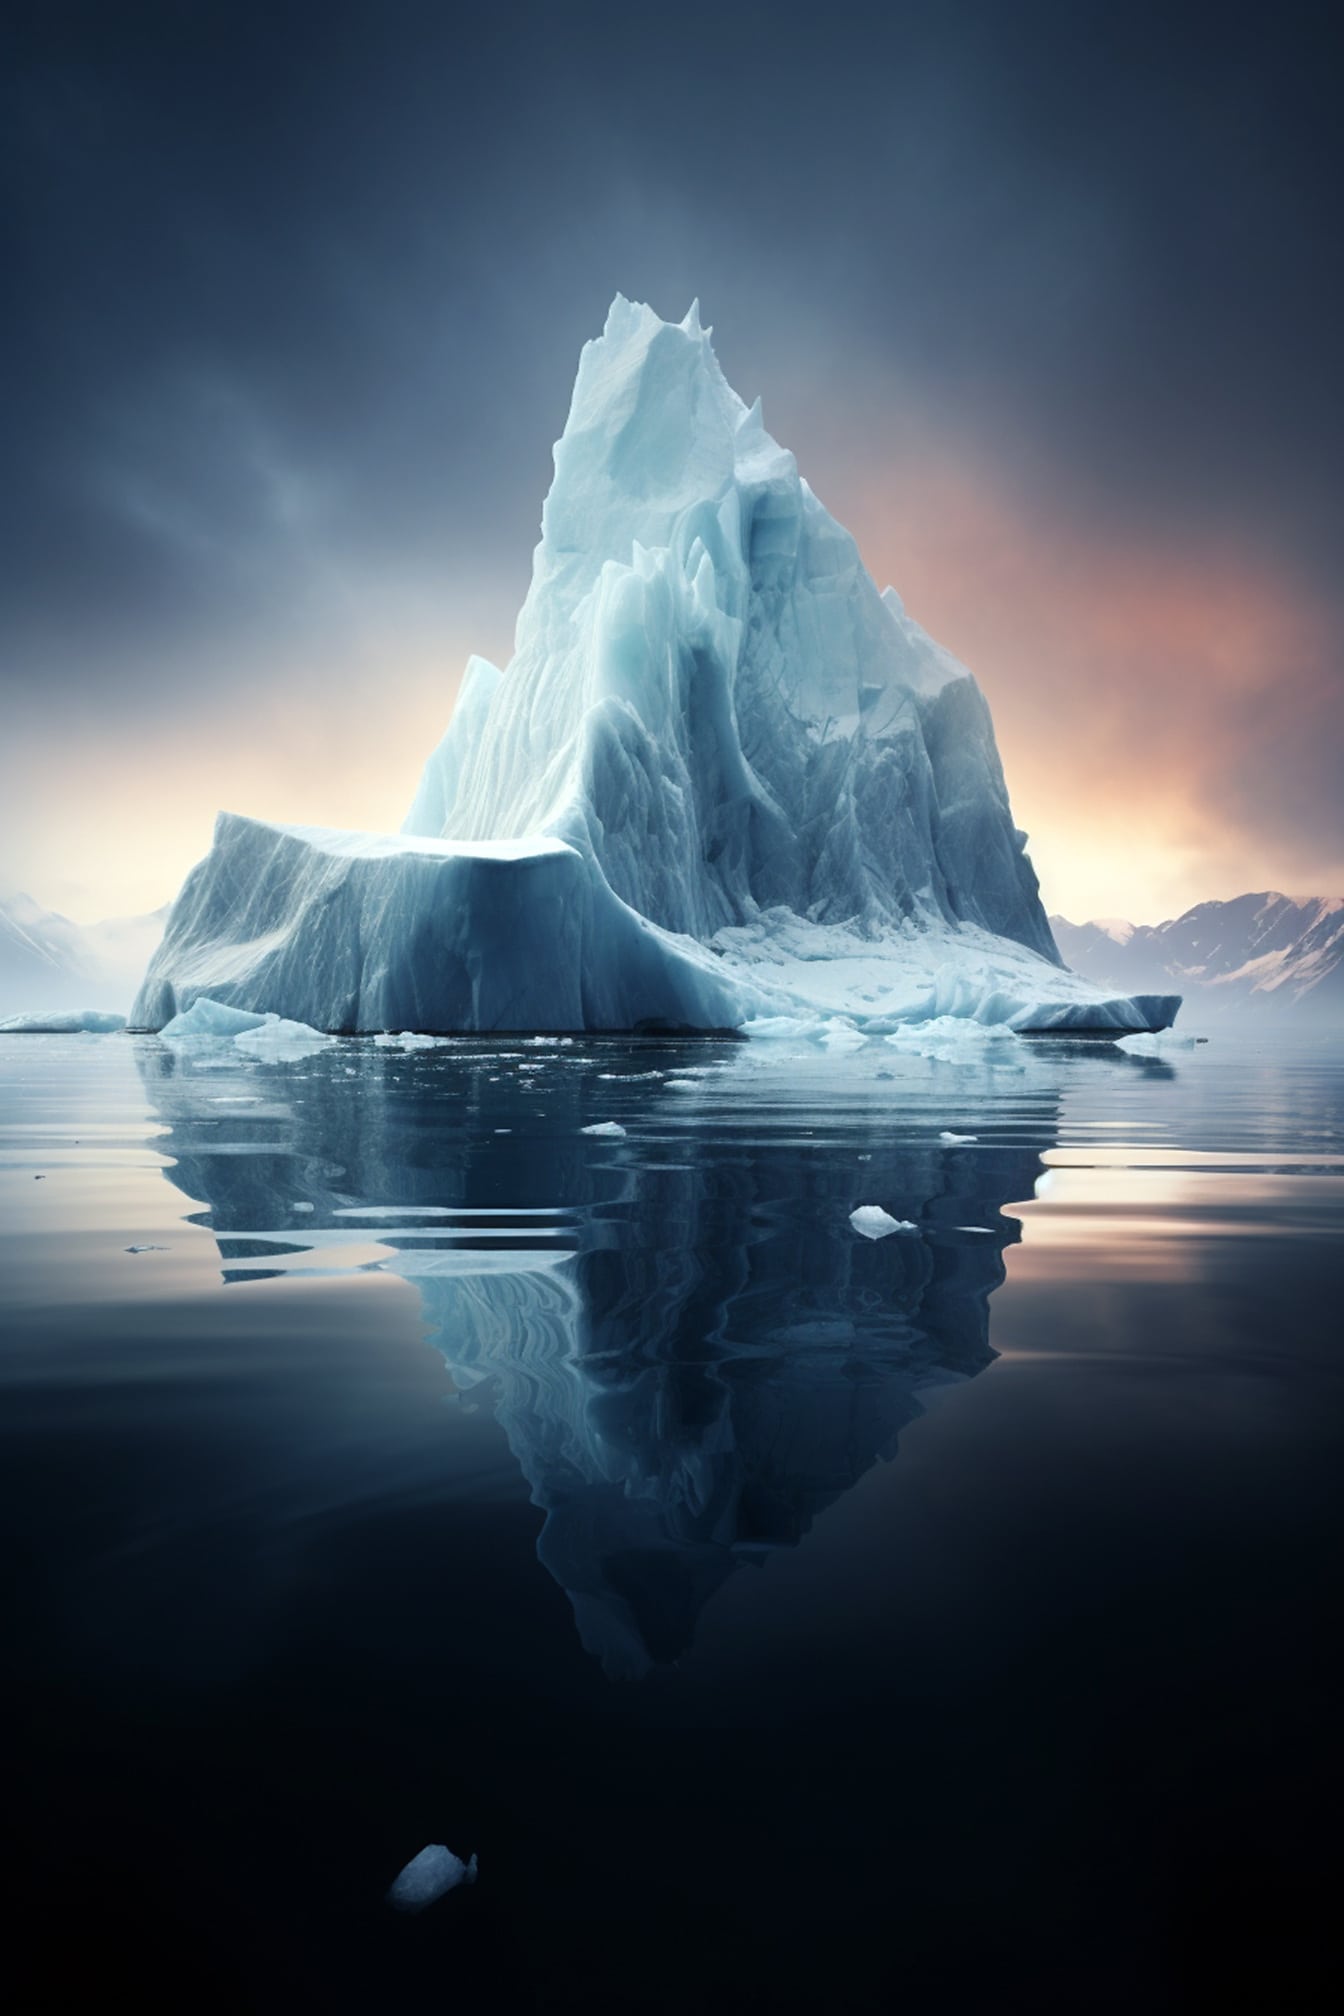 진한 푸른 하늘과 함께 차가운 물에 빙산의 그림